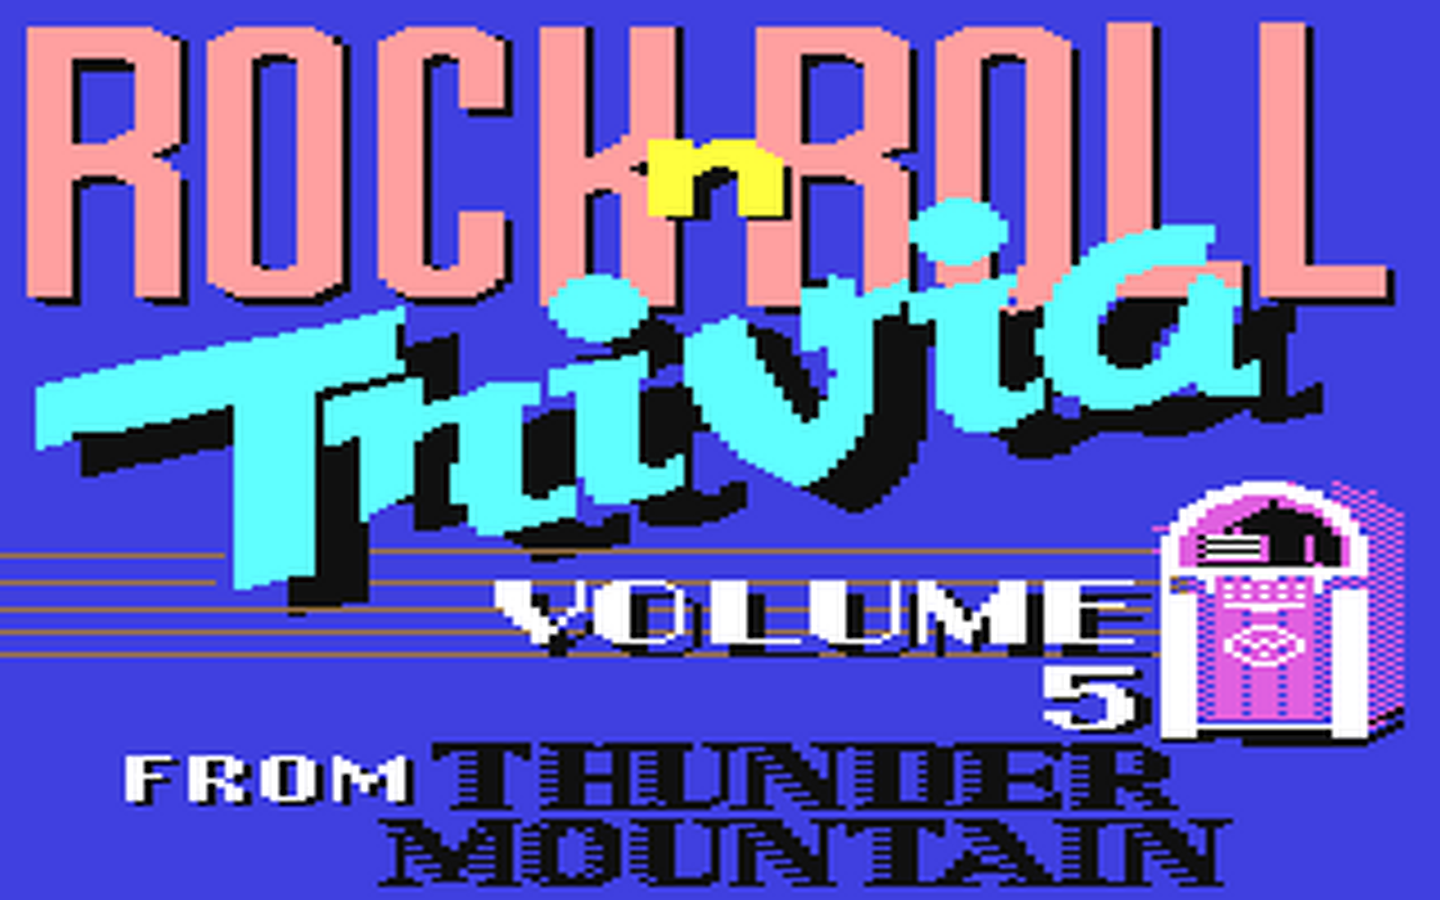 C64 GameBase Rock'n_Roll_Trivia_-_Volume_5 Thunder_Mountain/Prism_Leisure_Corp._(PLC) 1986